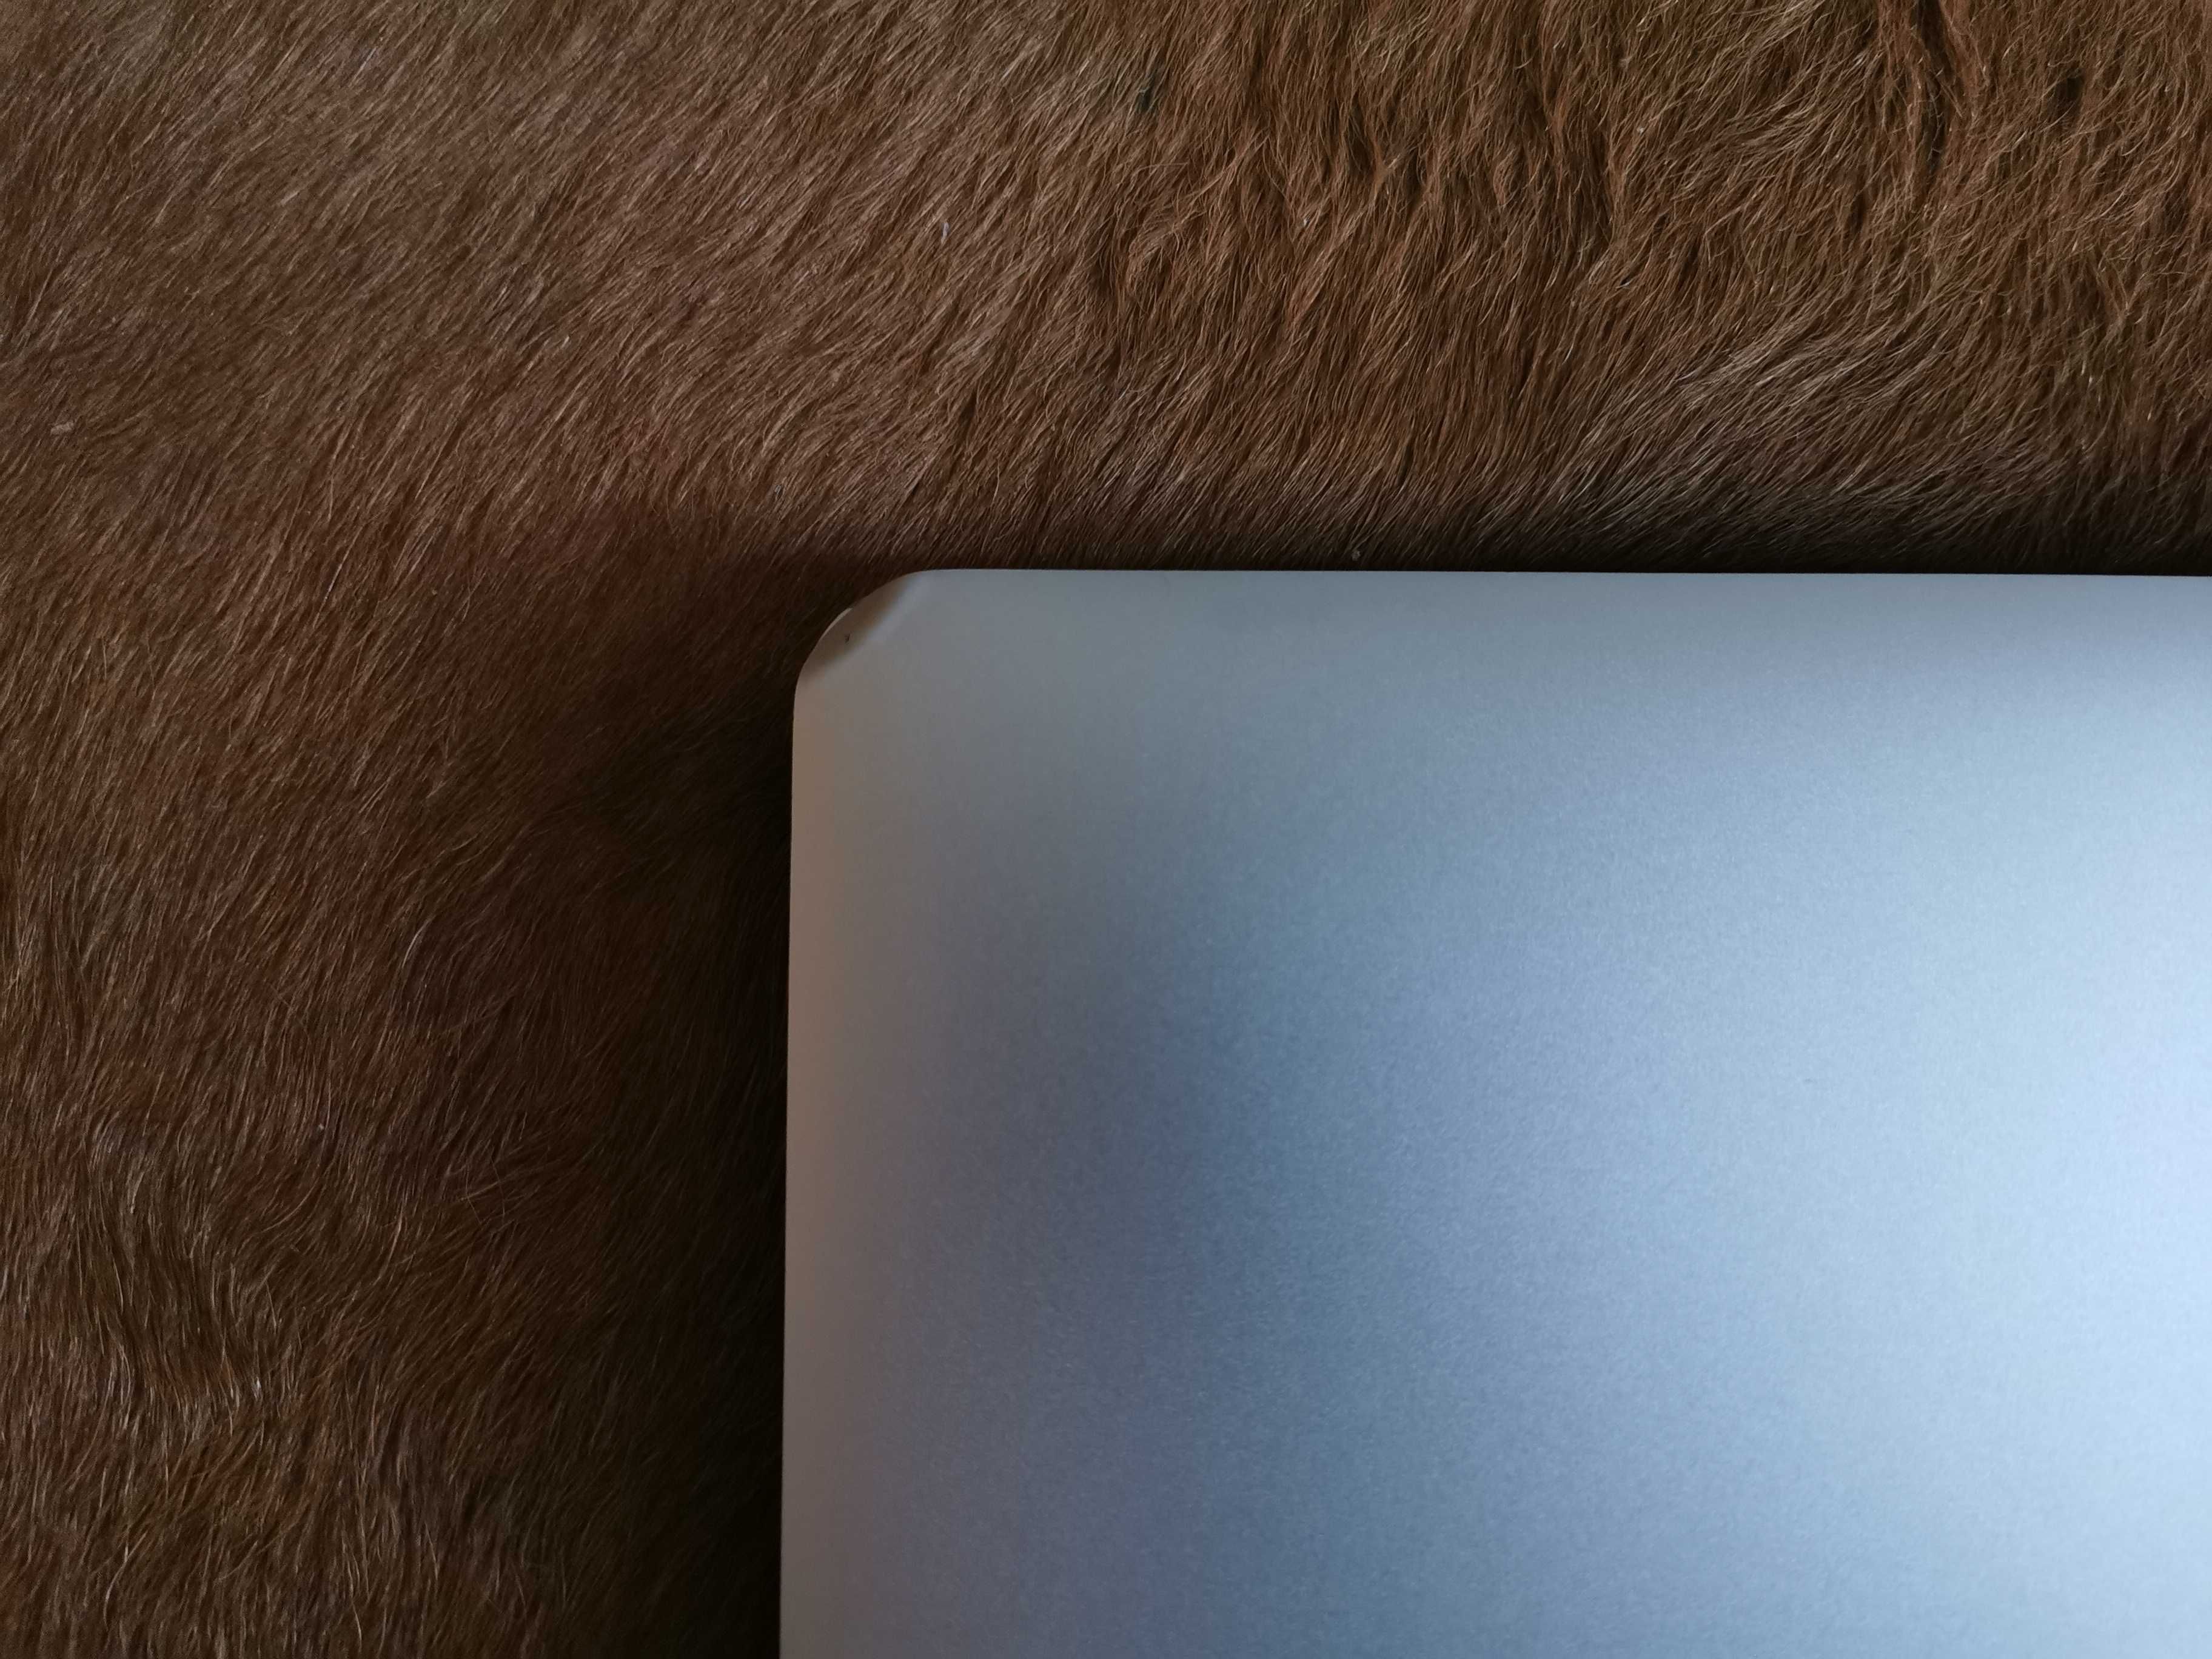 MacBook Air (13 polegadas, meados de 2011)